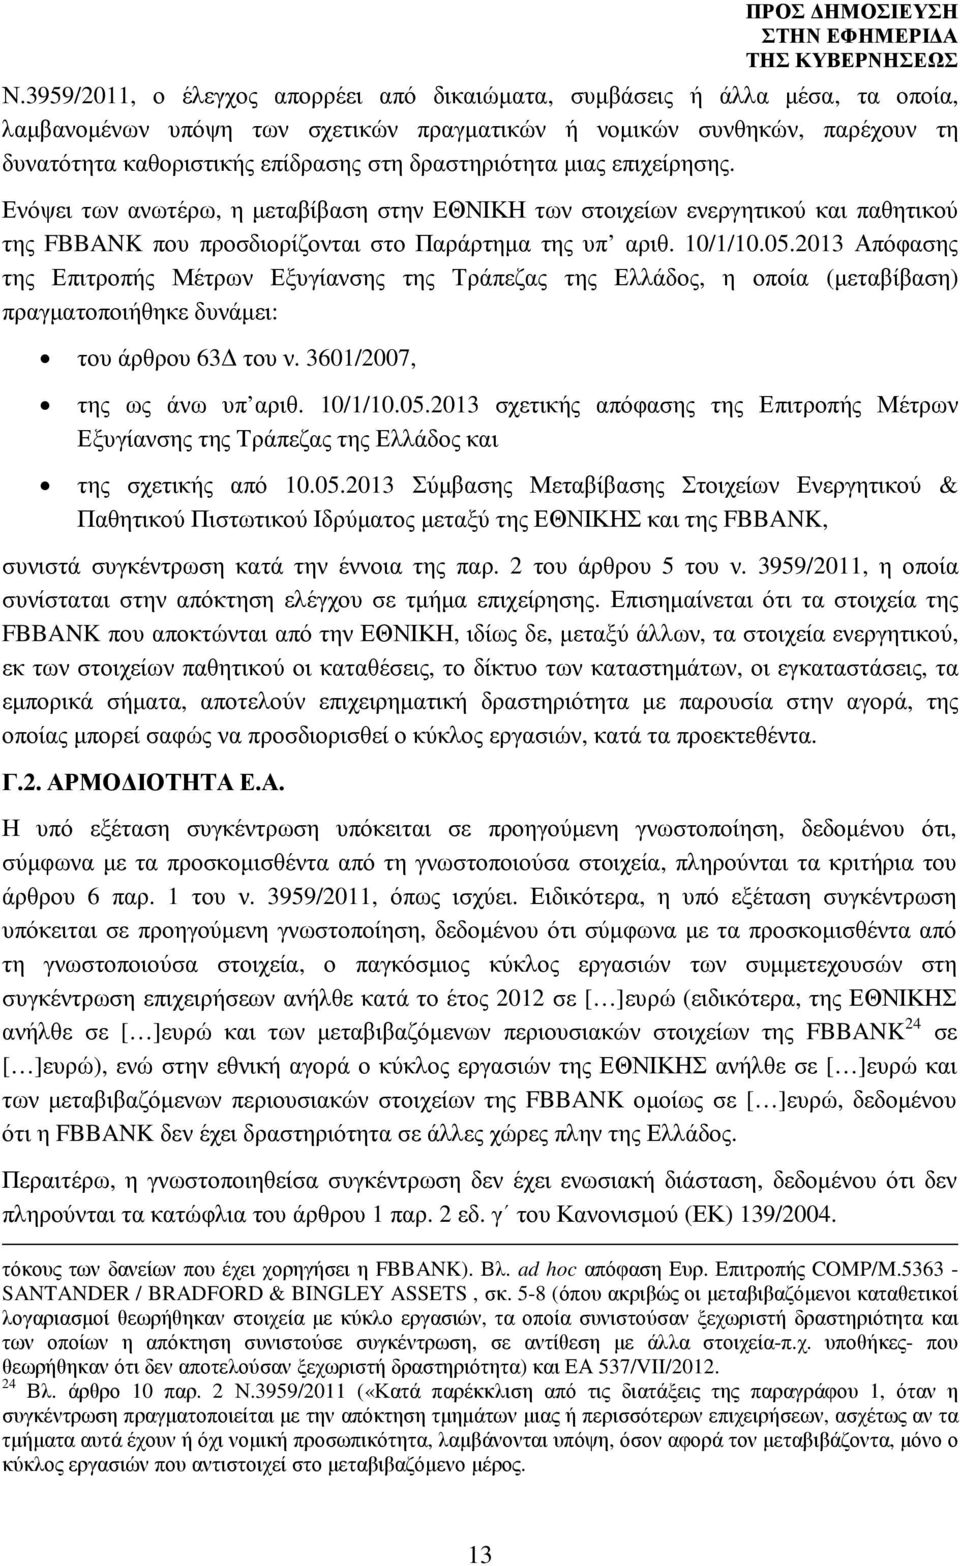 2013 Απόφασης της Επιτροπής Μέτρων Εξυγίανσης της Τράπεζας της Ελλάδος, η οποία (µεταβίβαση) πραγµατοποιήθηκε δυνάµει: του άρθρου 63 του ν. 3601/2007, της ως άνω υπ αριθ. 10/1/10.05.